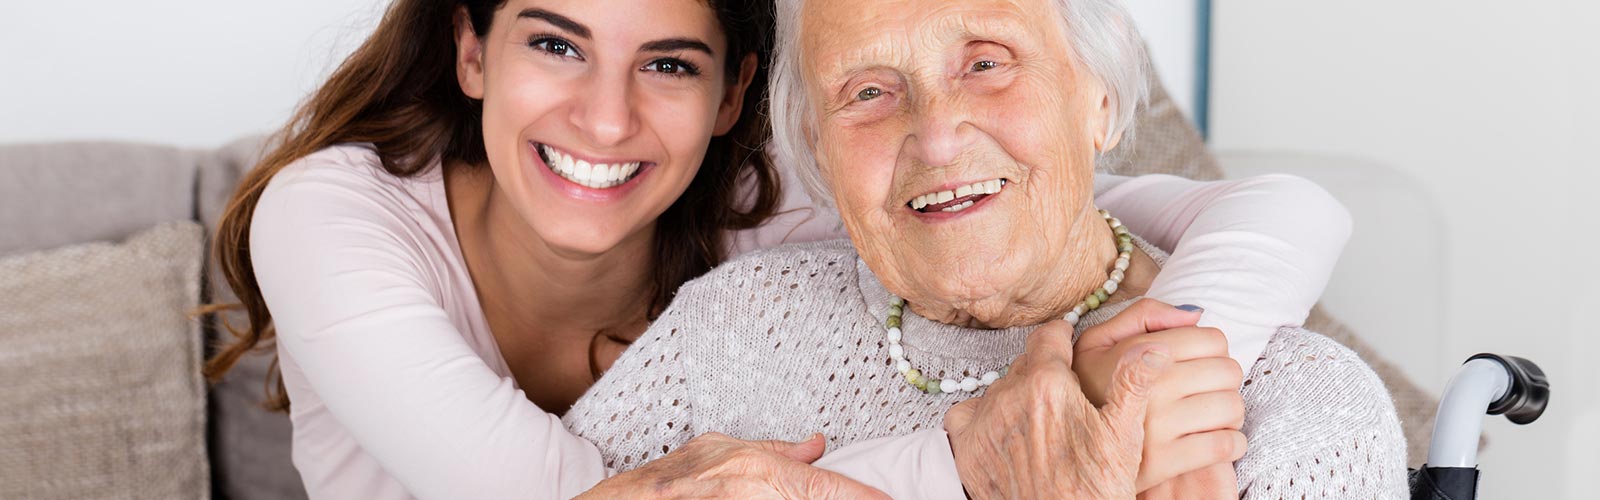 Lächelnde Seniorin und ihre Pflegerin umarmen sich